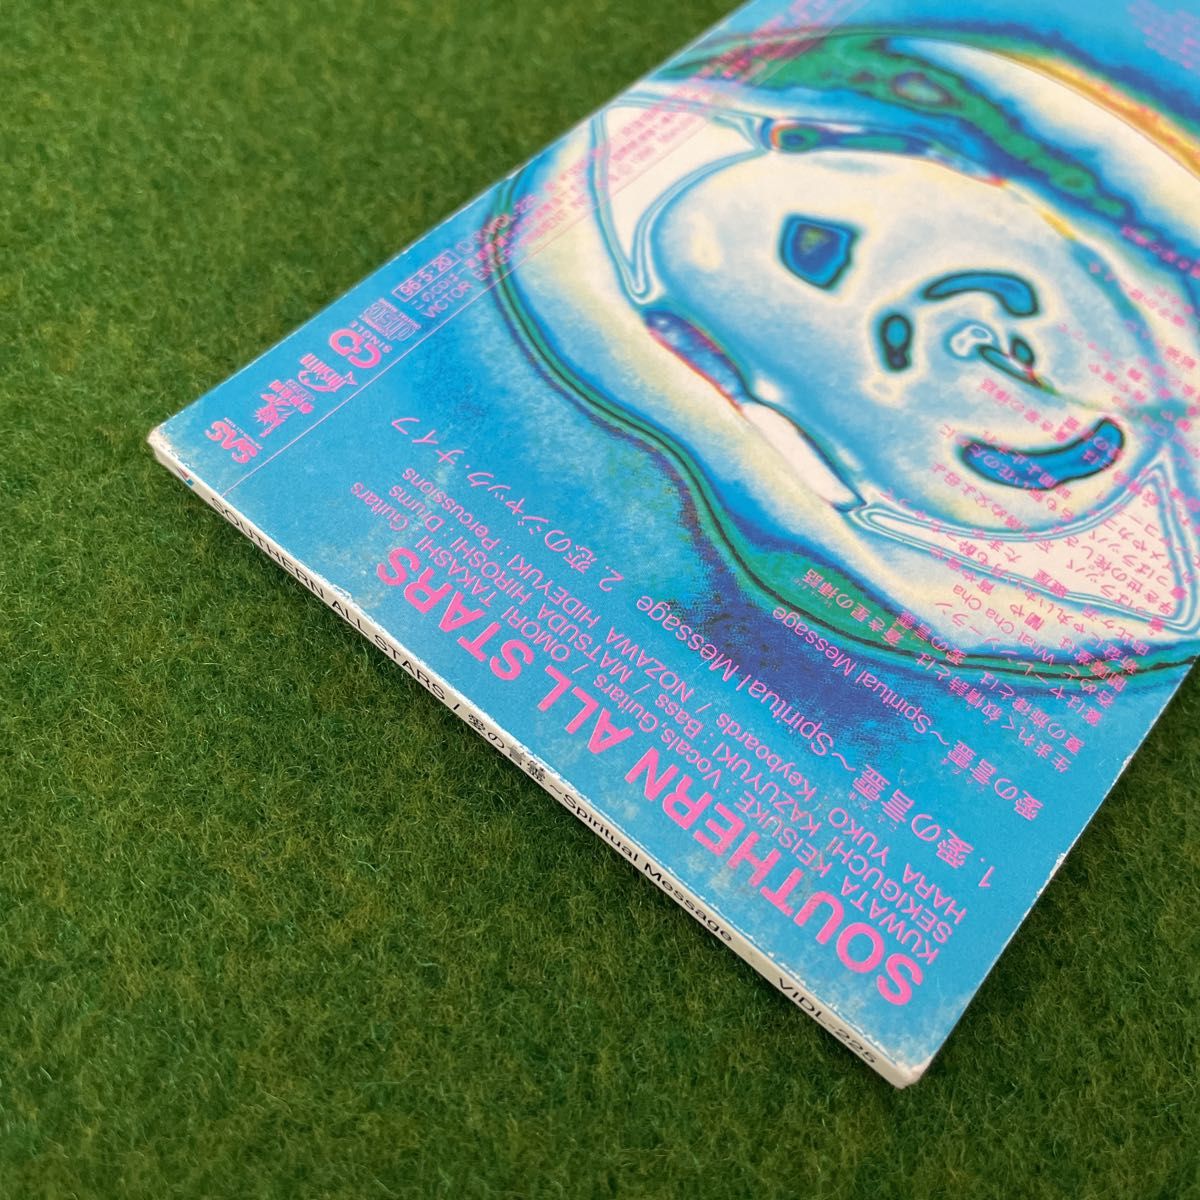 サザンオールスターズ / 愛の言霊 8cm CD